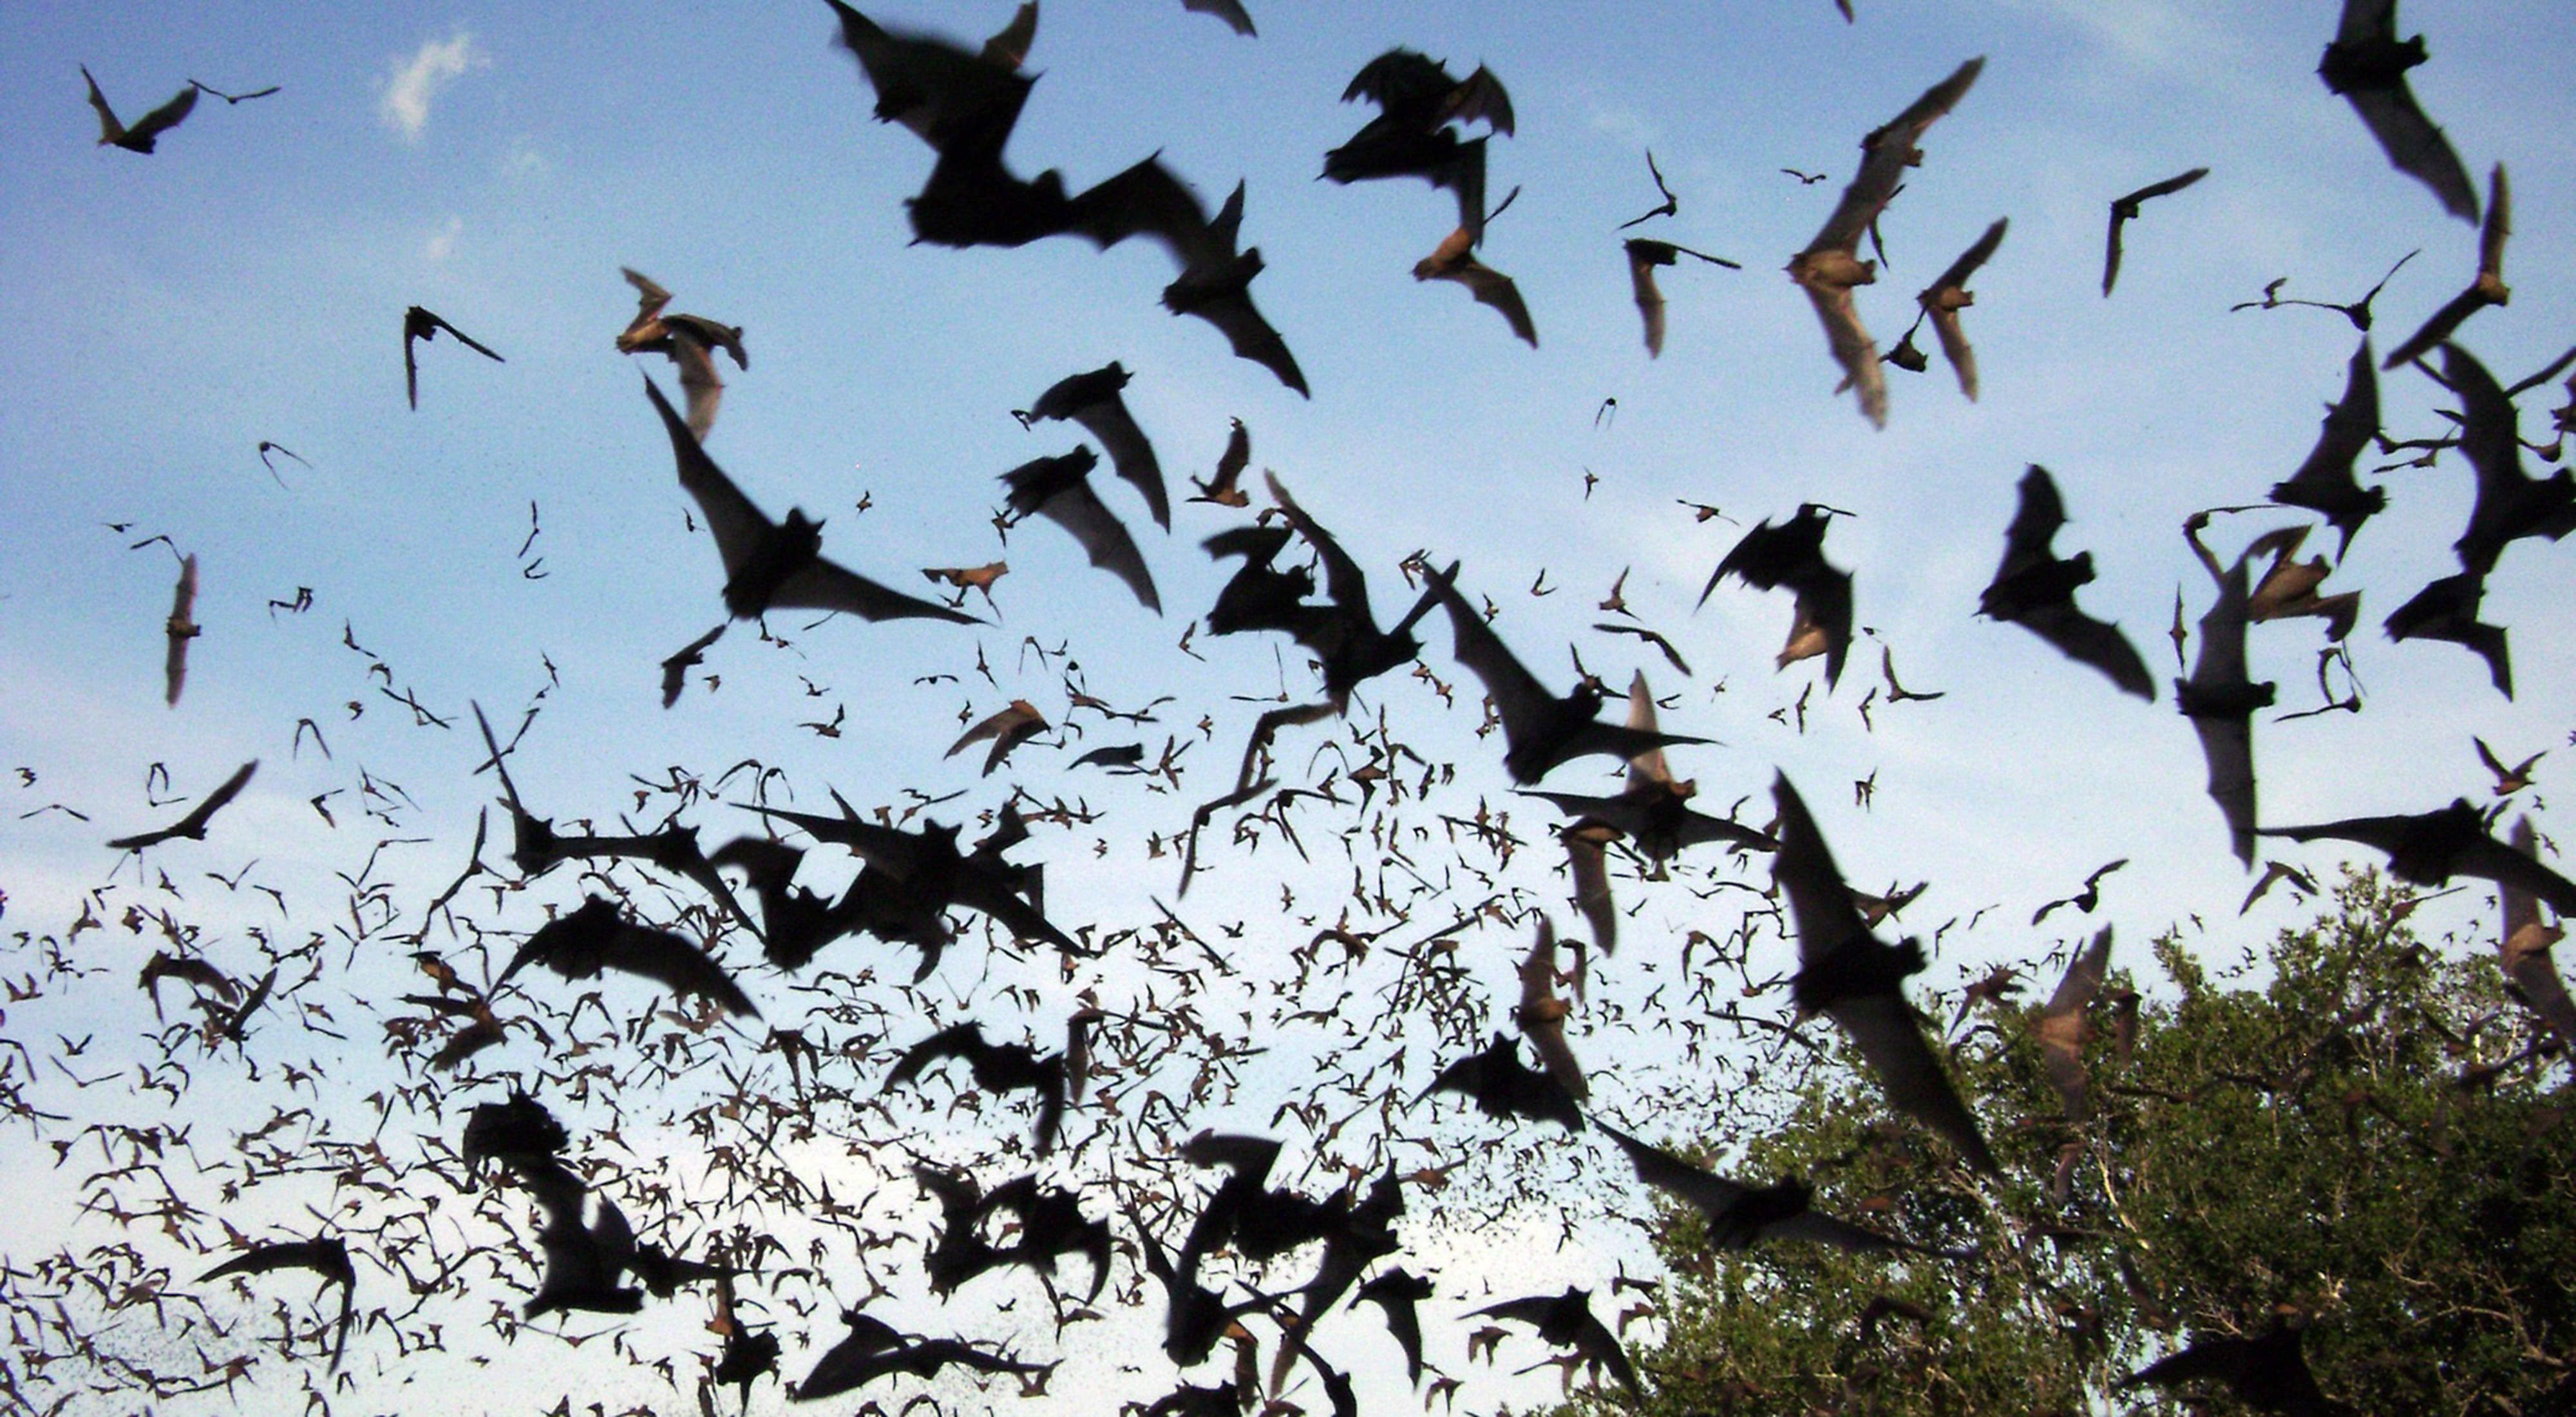 Thousands of bats stream across a darkening sky.